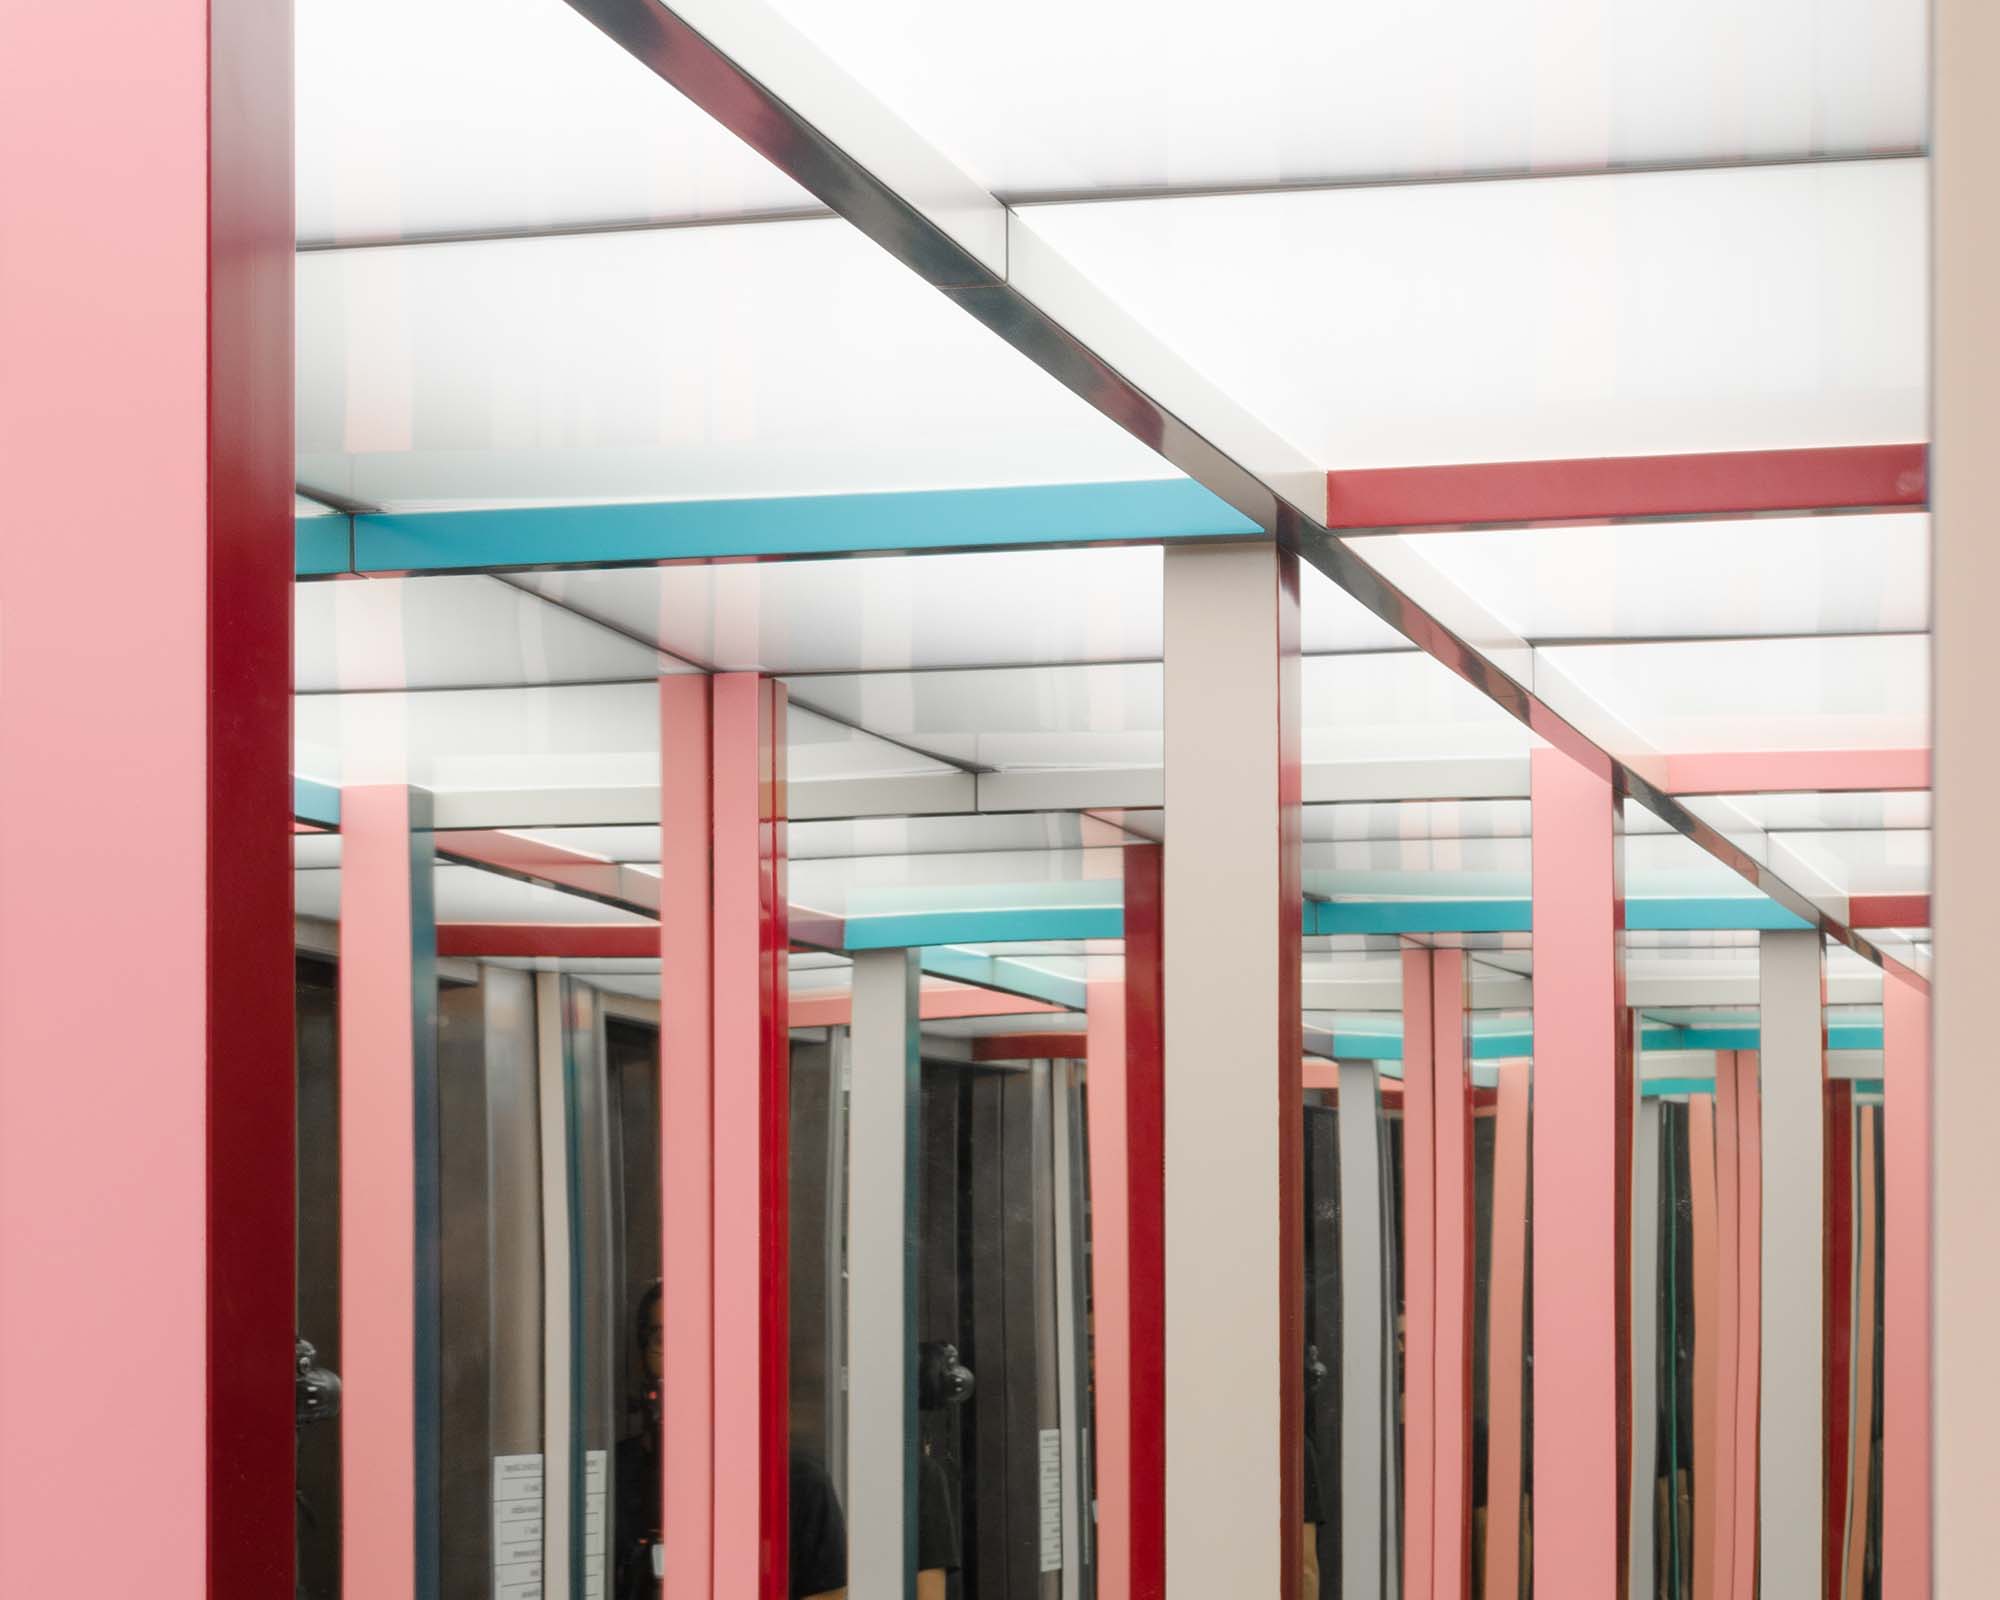 Instalação feita de perfis metálicos verticais coloridos no elevador da culturgest